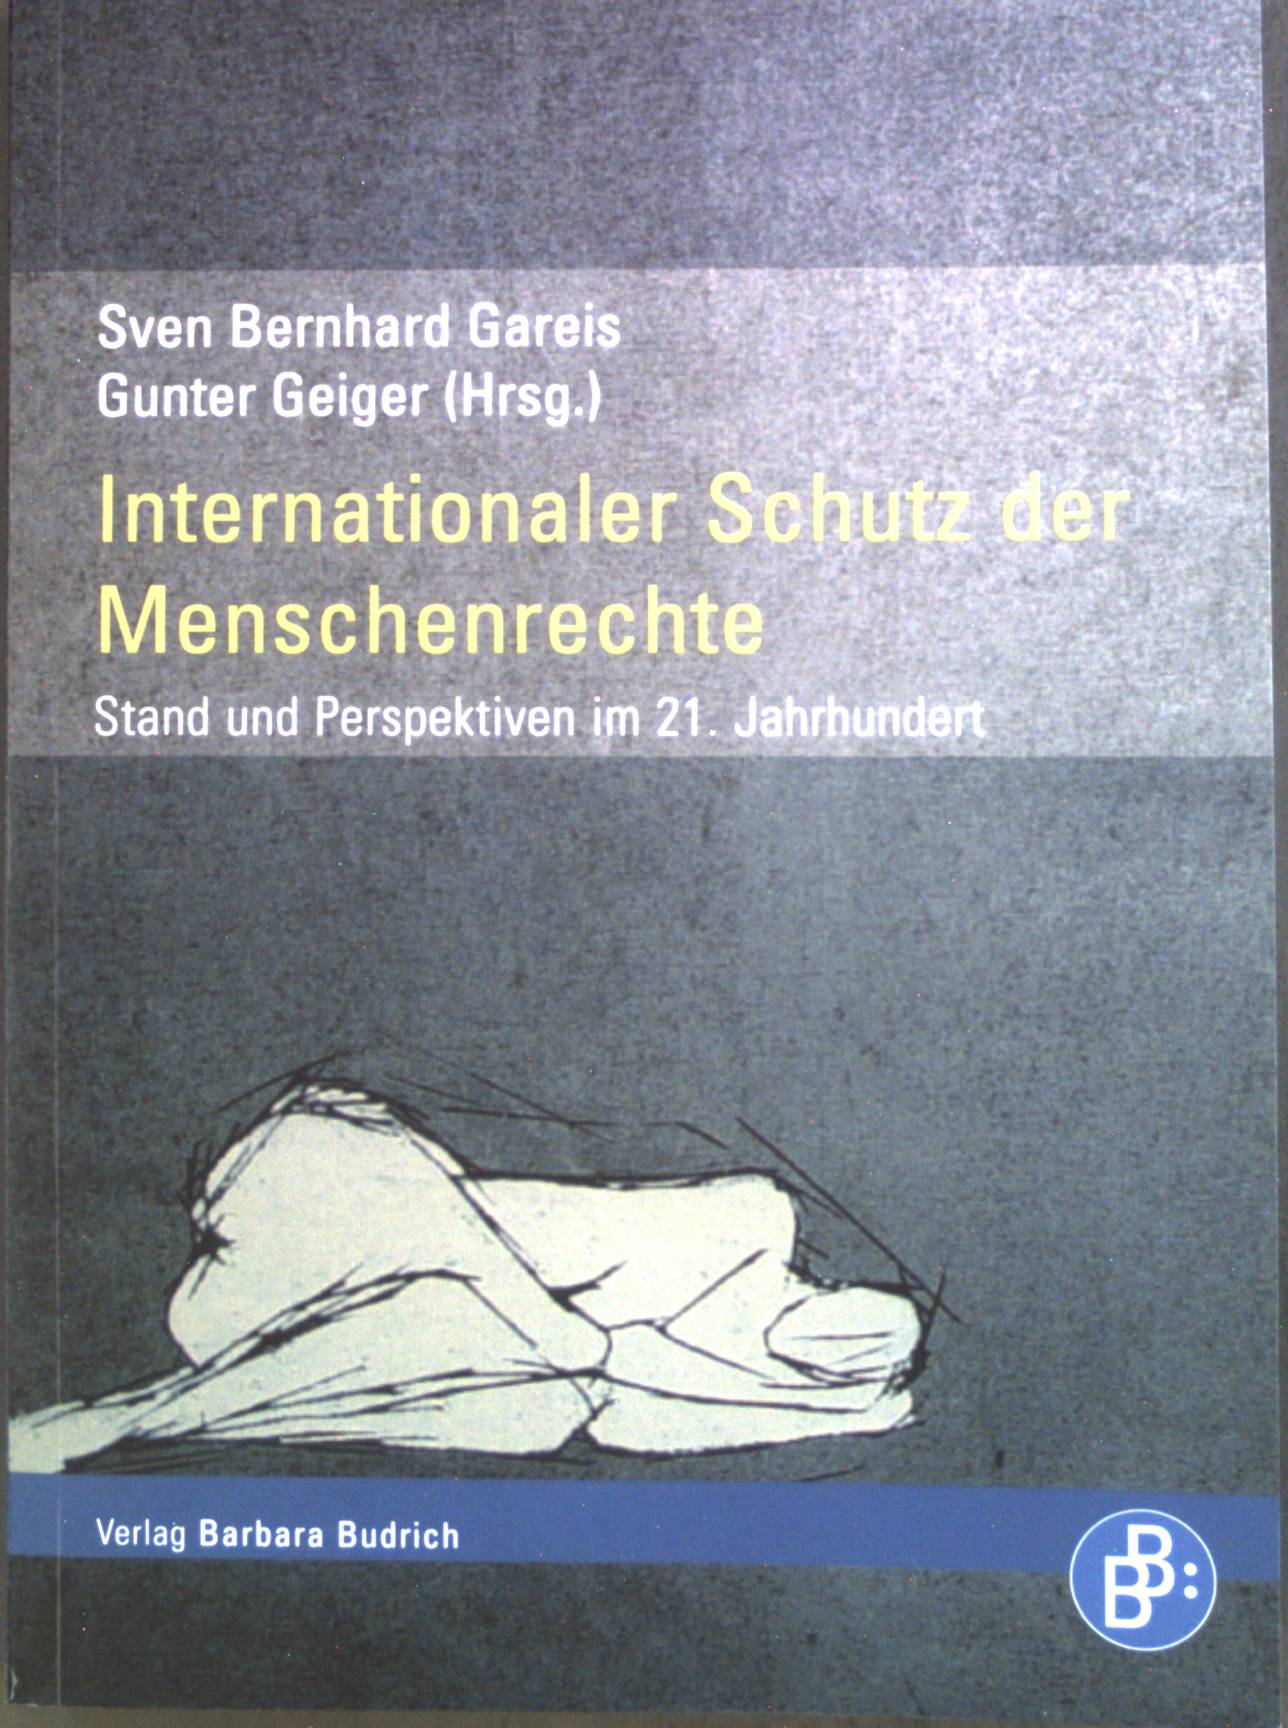 Internationaler Schutz der Menschenrechte : Stand und Perspektiven im 21. Jahrhundert. - Gareis, Sven Bernhard